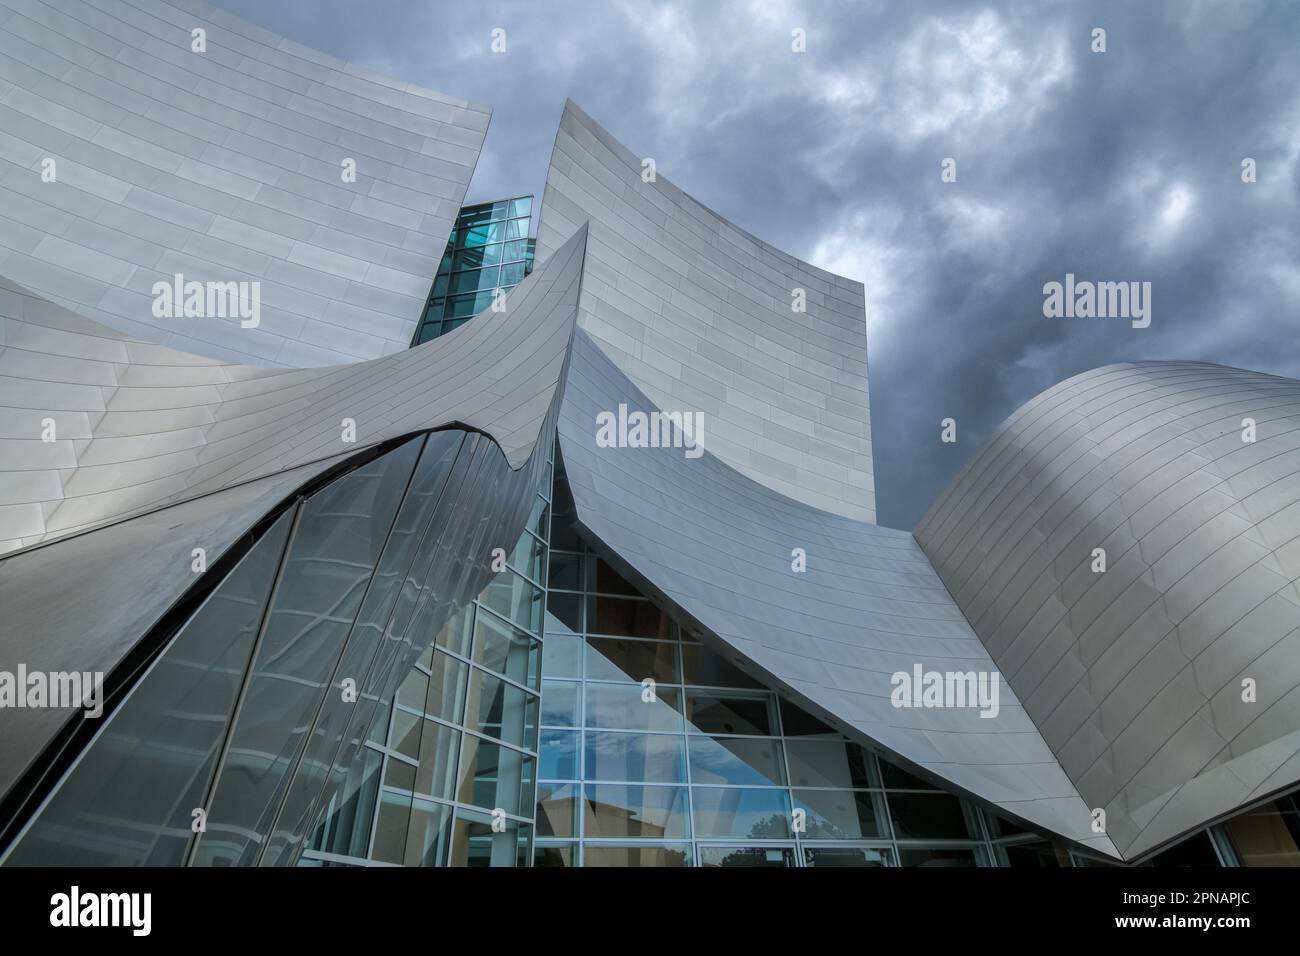 Des nuages orageux se rassemblent au-dessus de la salle de concert Walt Disney au centre-ville de Los Angeles, en Californie, conçue par le célèbre architecte Frank Gehry. Banque D'Images